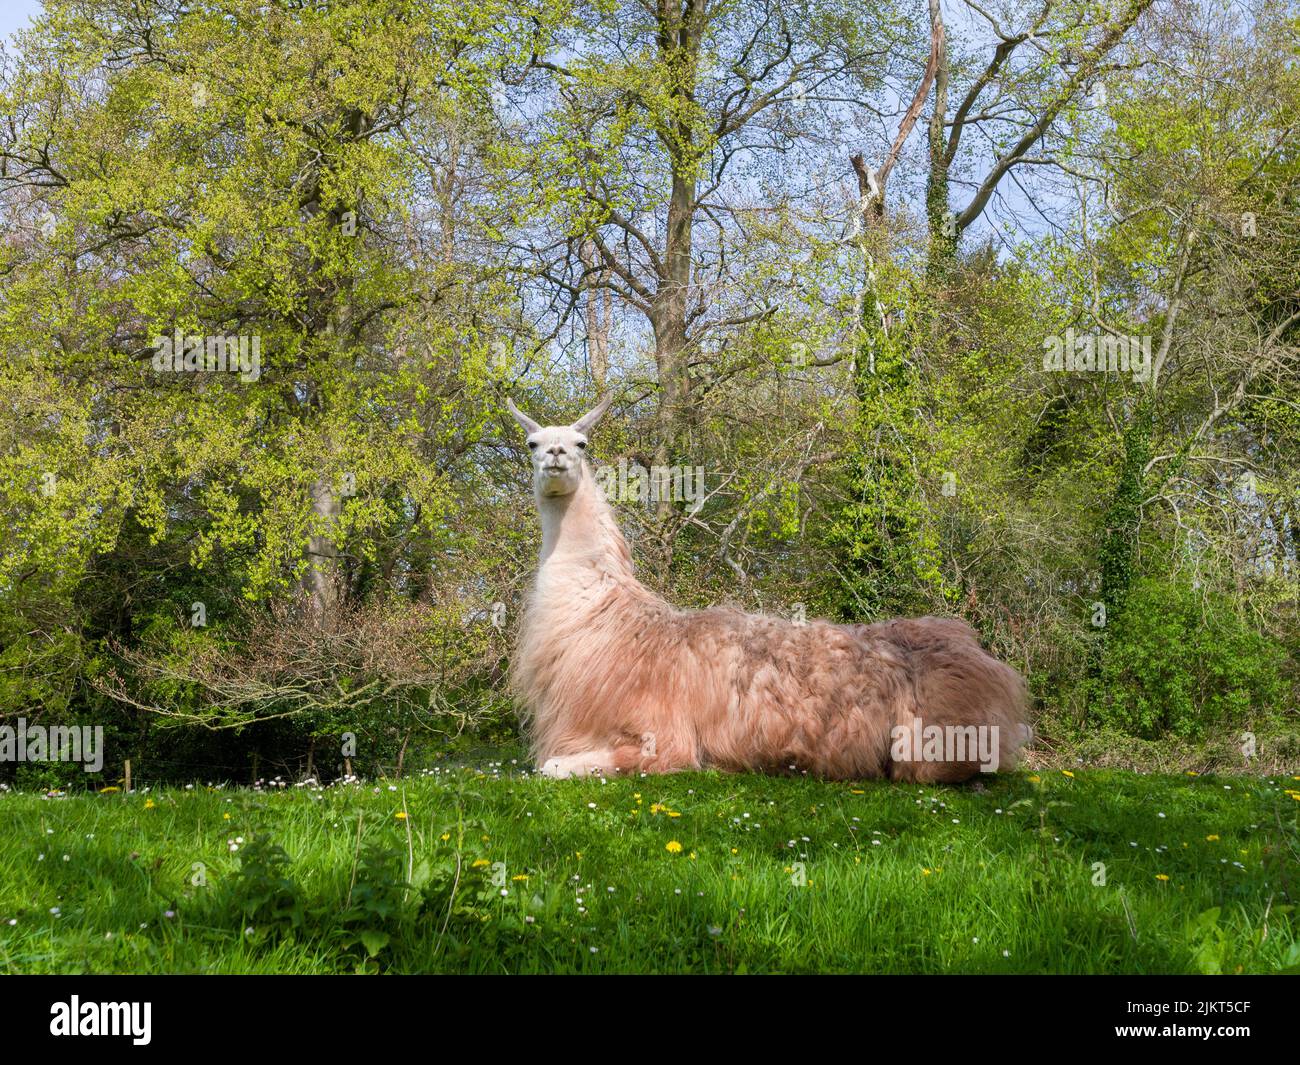 Llama doméstica (lama glama) descansando en un campo en el suroeste de Inglaterra. Foto de stock